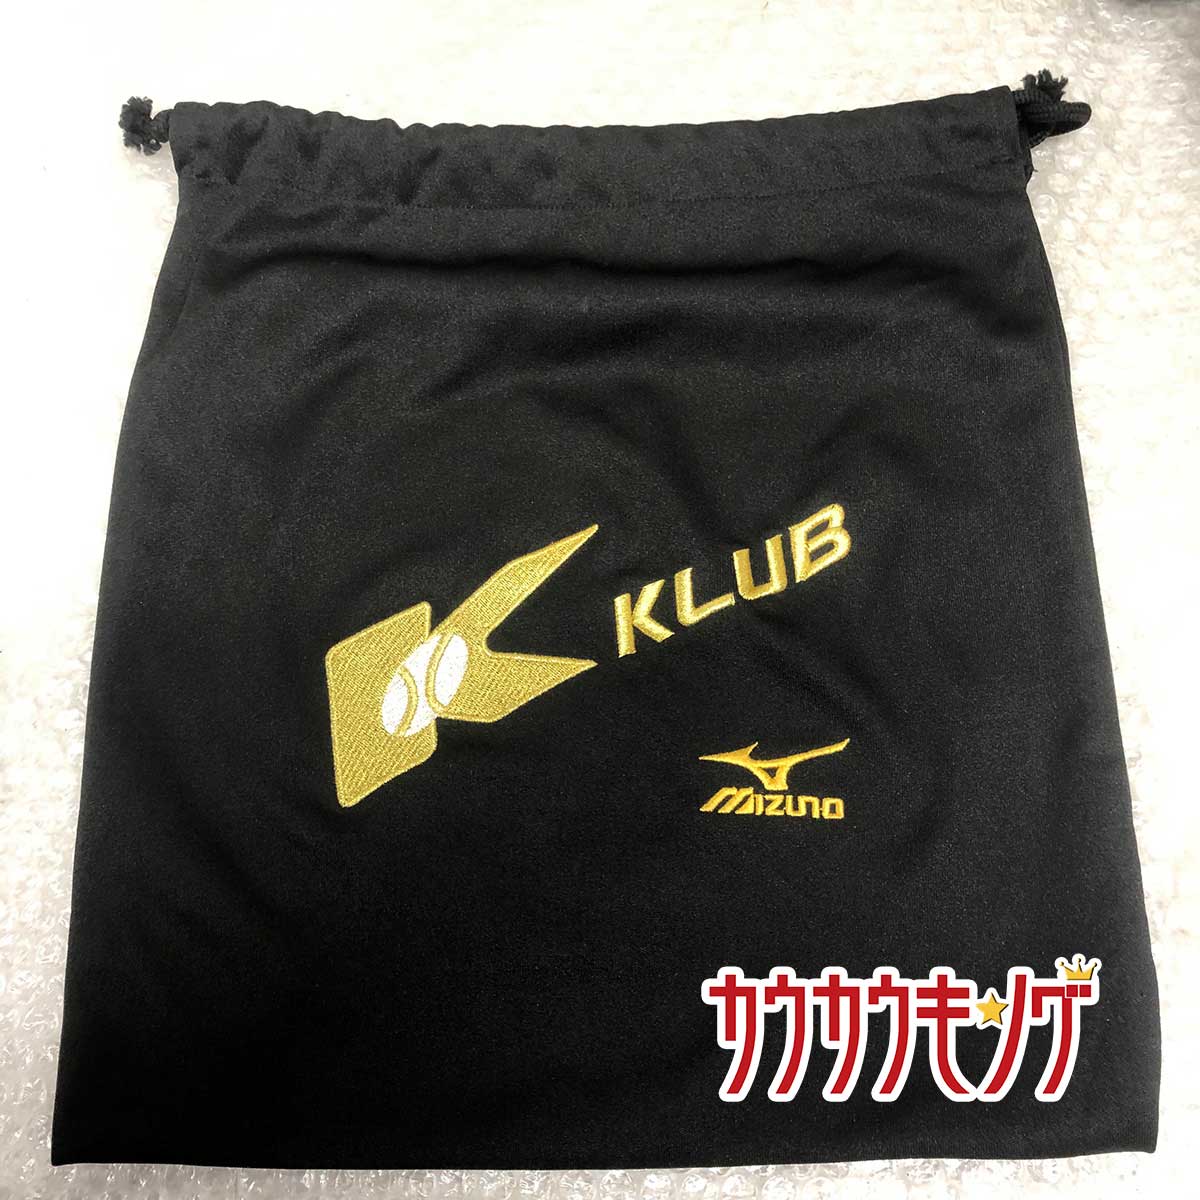 【中古】ミズノプロ グラブ袋 K-KLUB レア 野球 グローブ袋 MIZUNO PRO